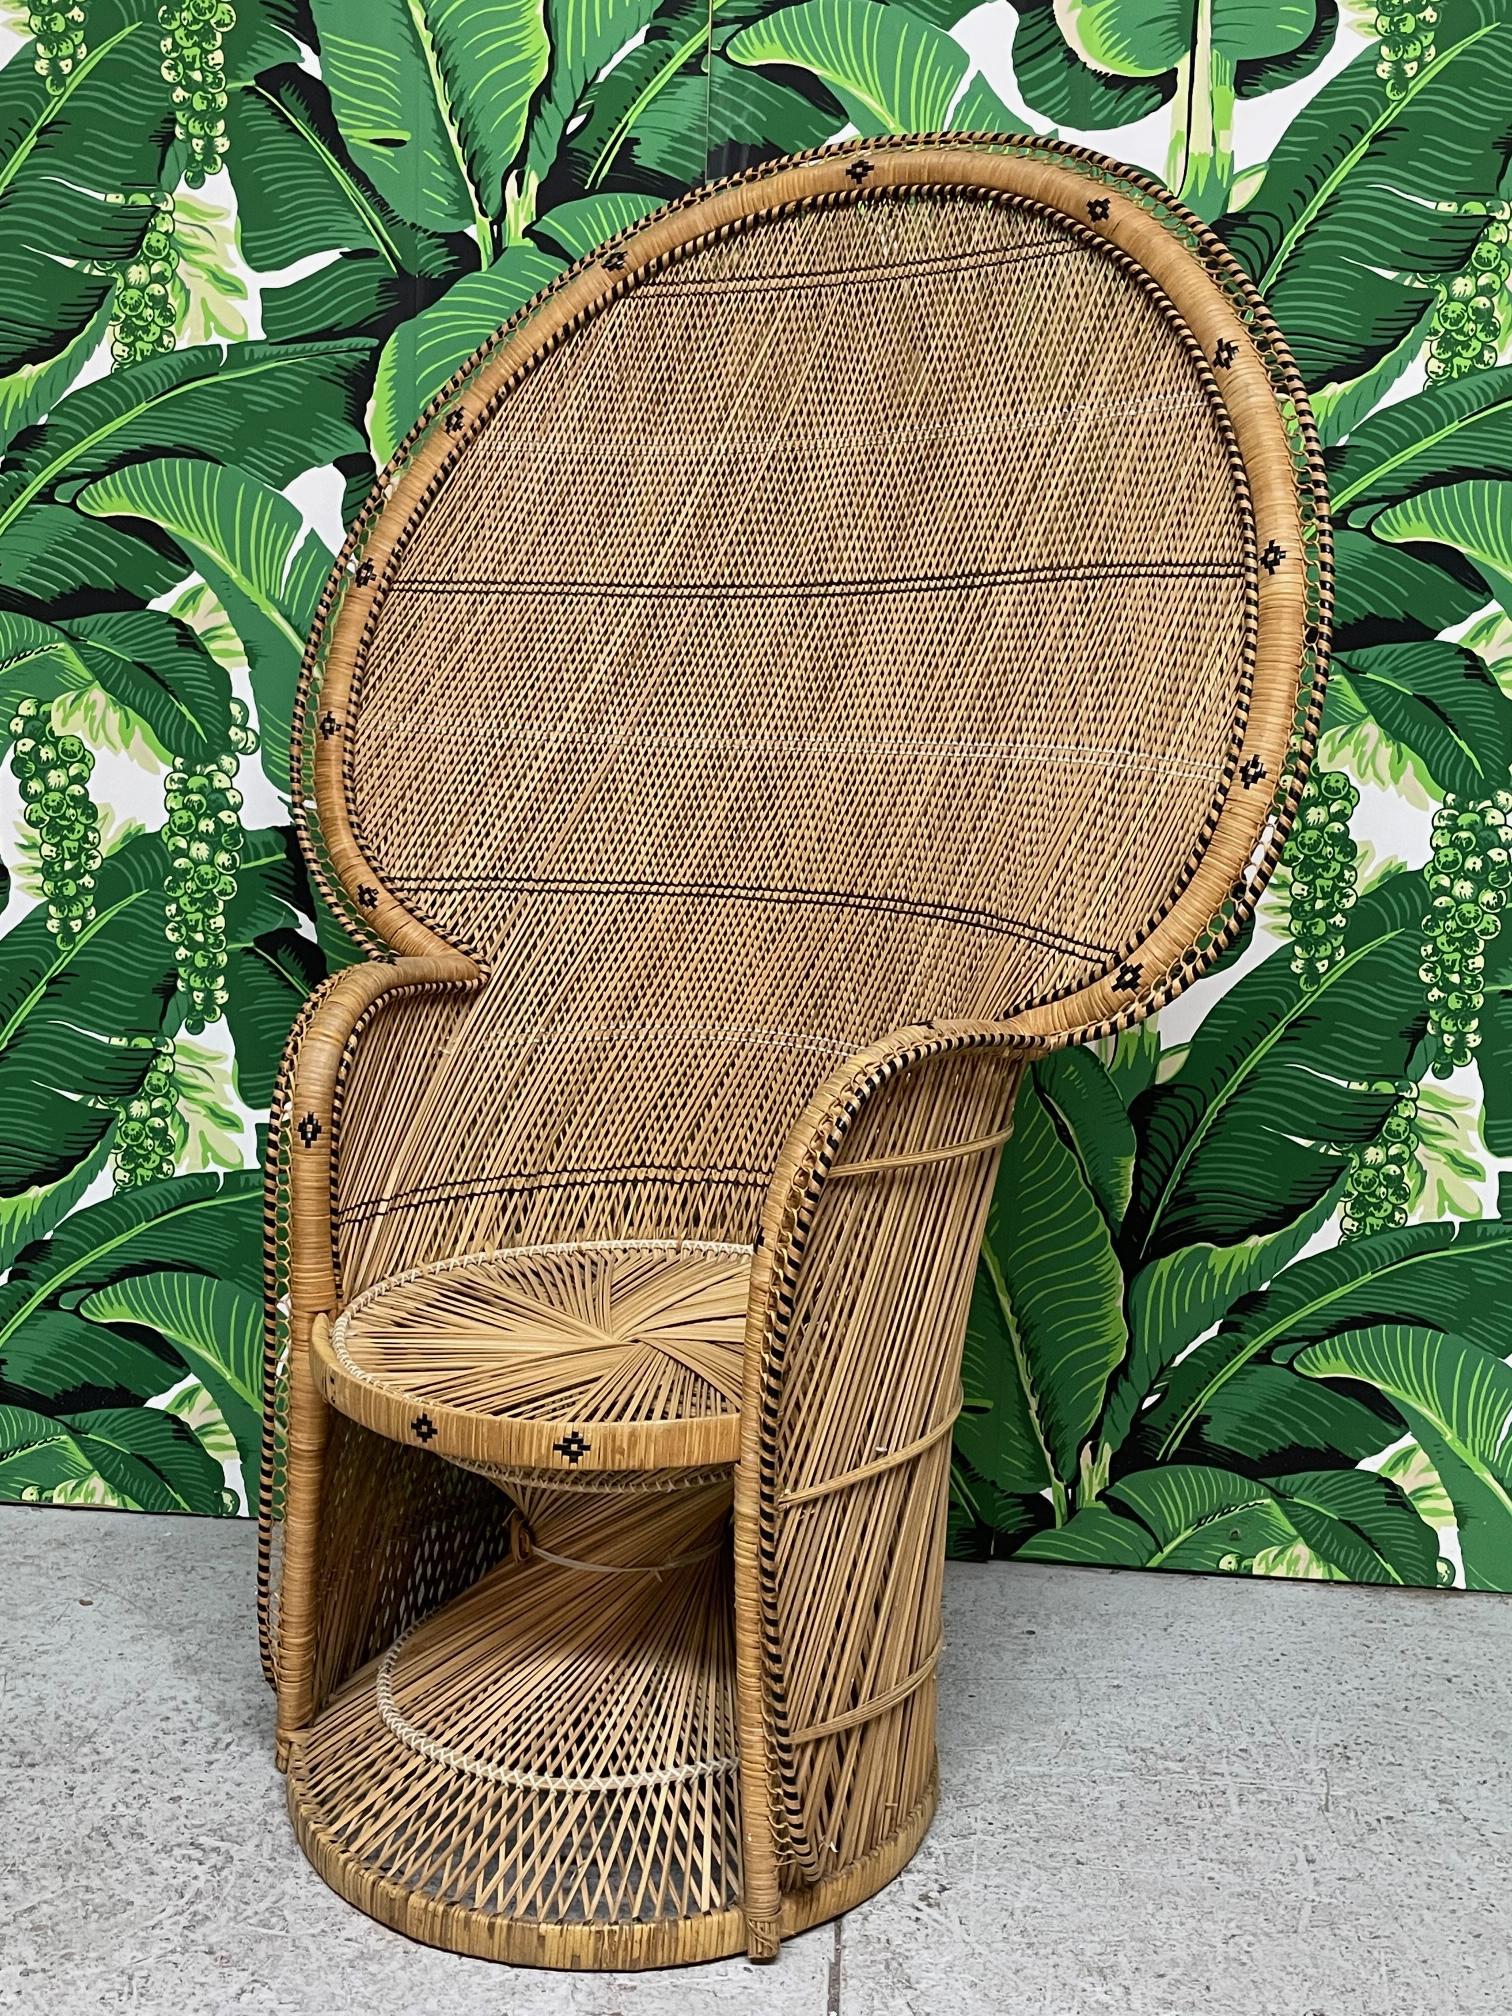 La chaise paon en osier vintage présente un fin motif de tissage croisé et des détails complexes en rotin noir. Base au design torsadé et grand dos en éventail. Bon état avec des imperfections mineures correspondant à l'âge, voir les photos pour les